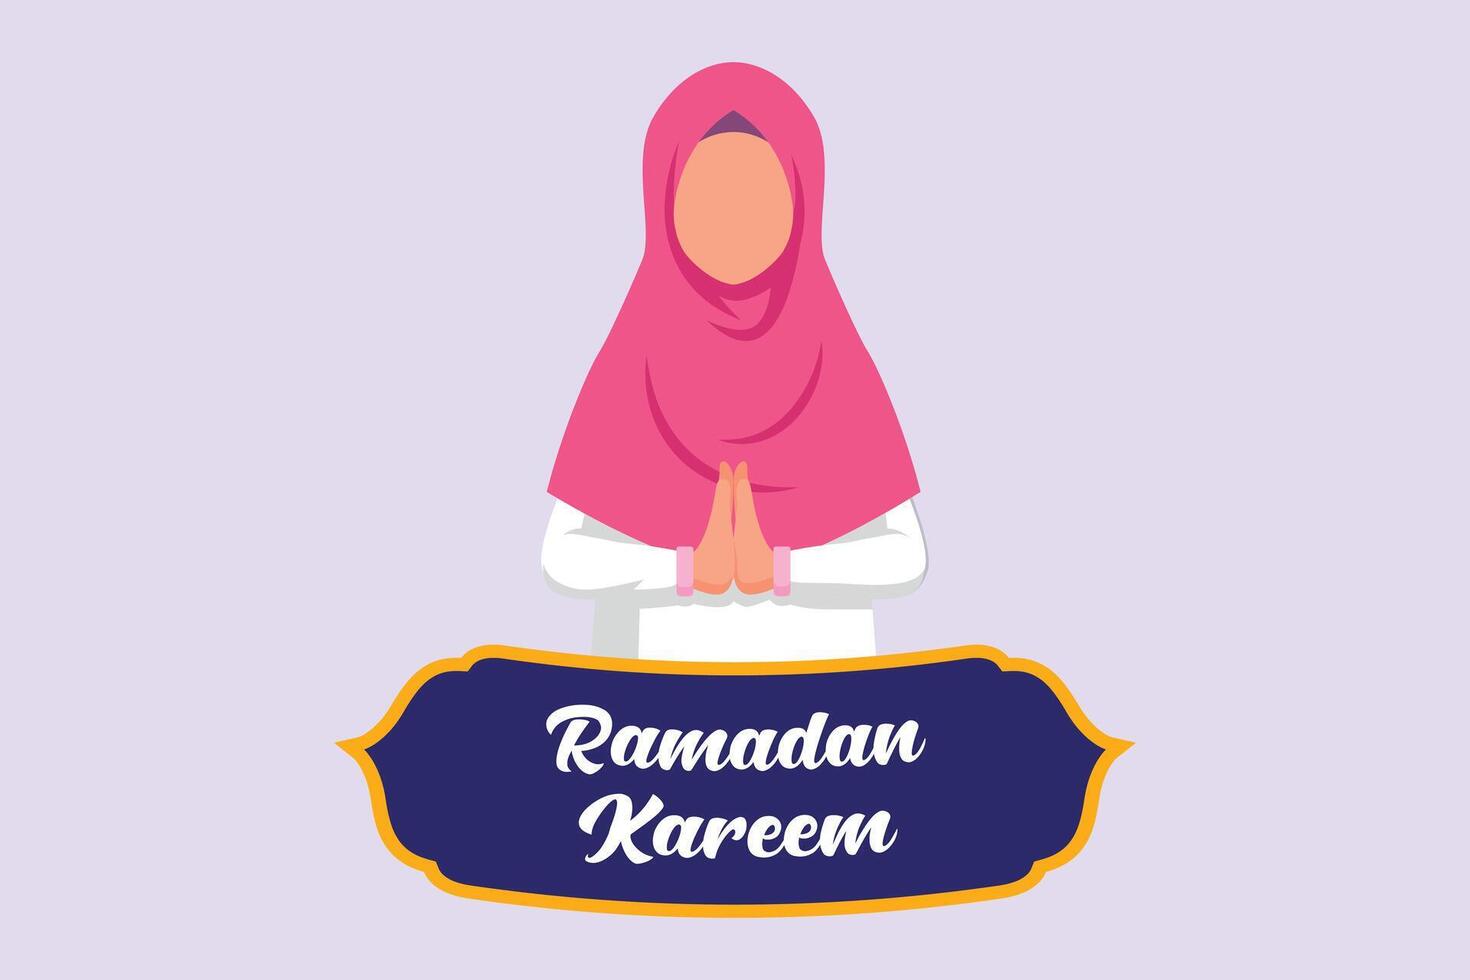 välkomnande ramadan begrepp. färgad platt vektor illustration isolerat.